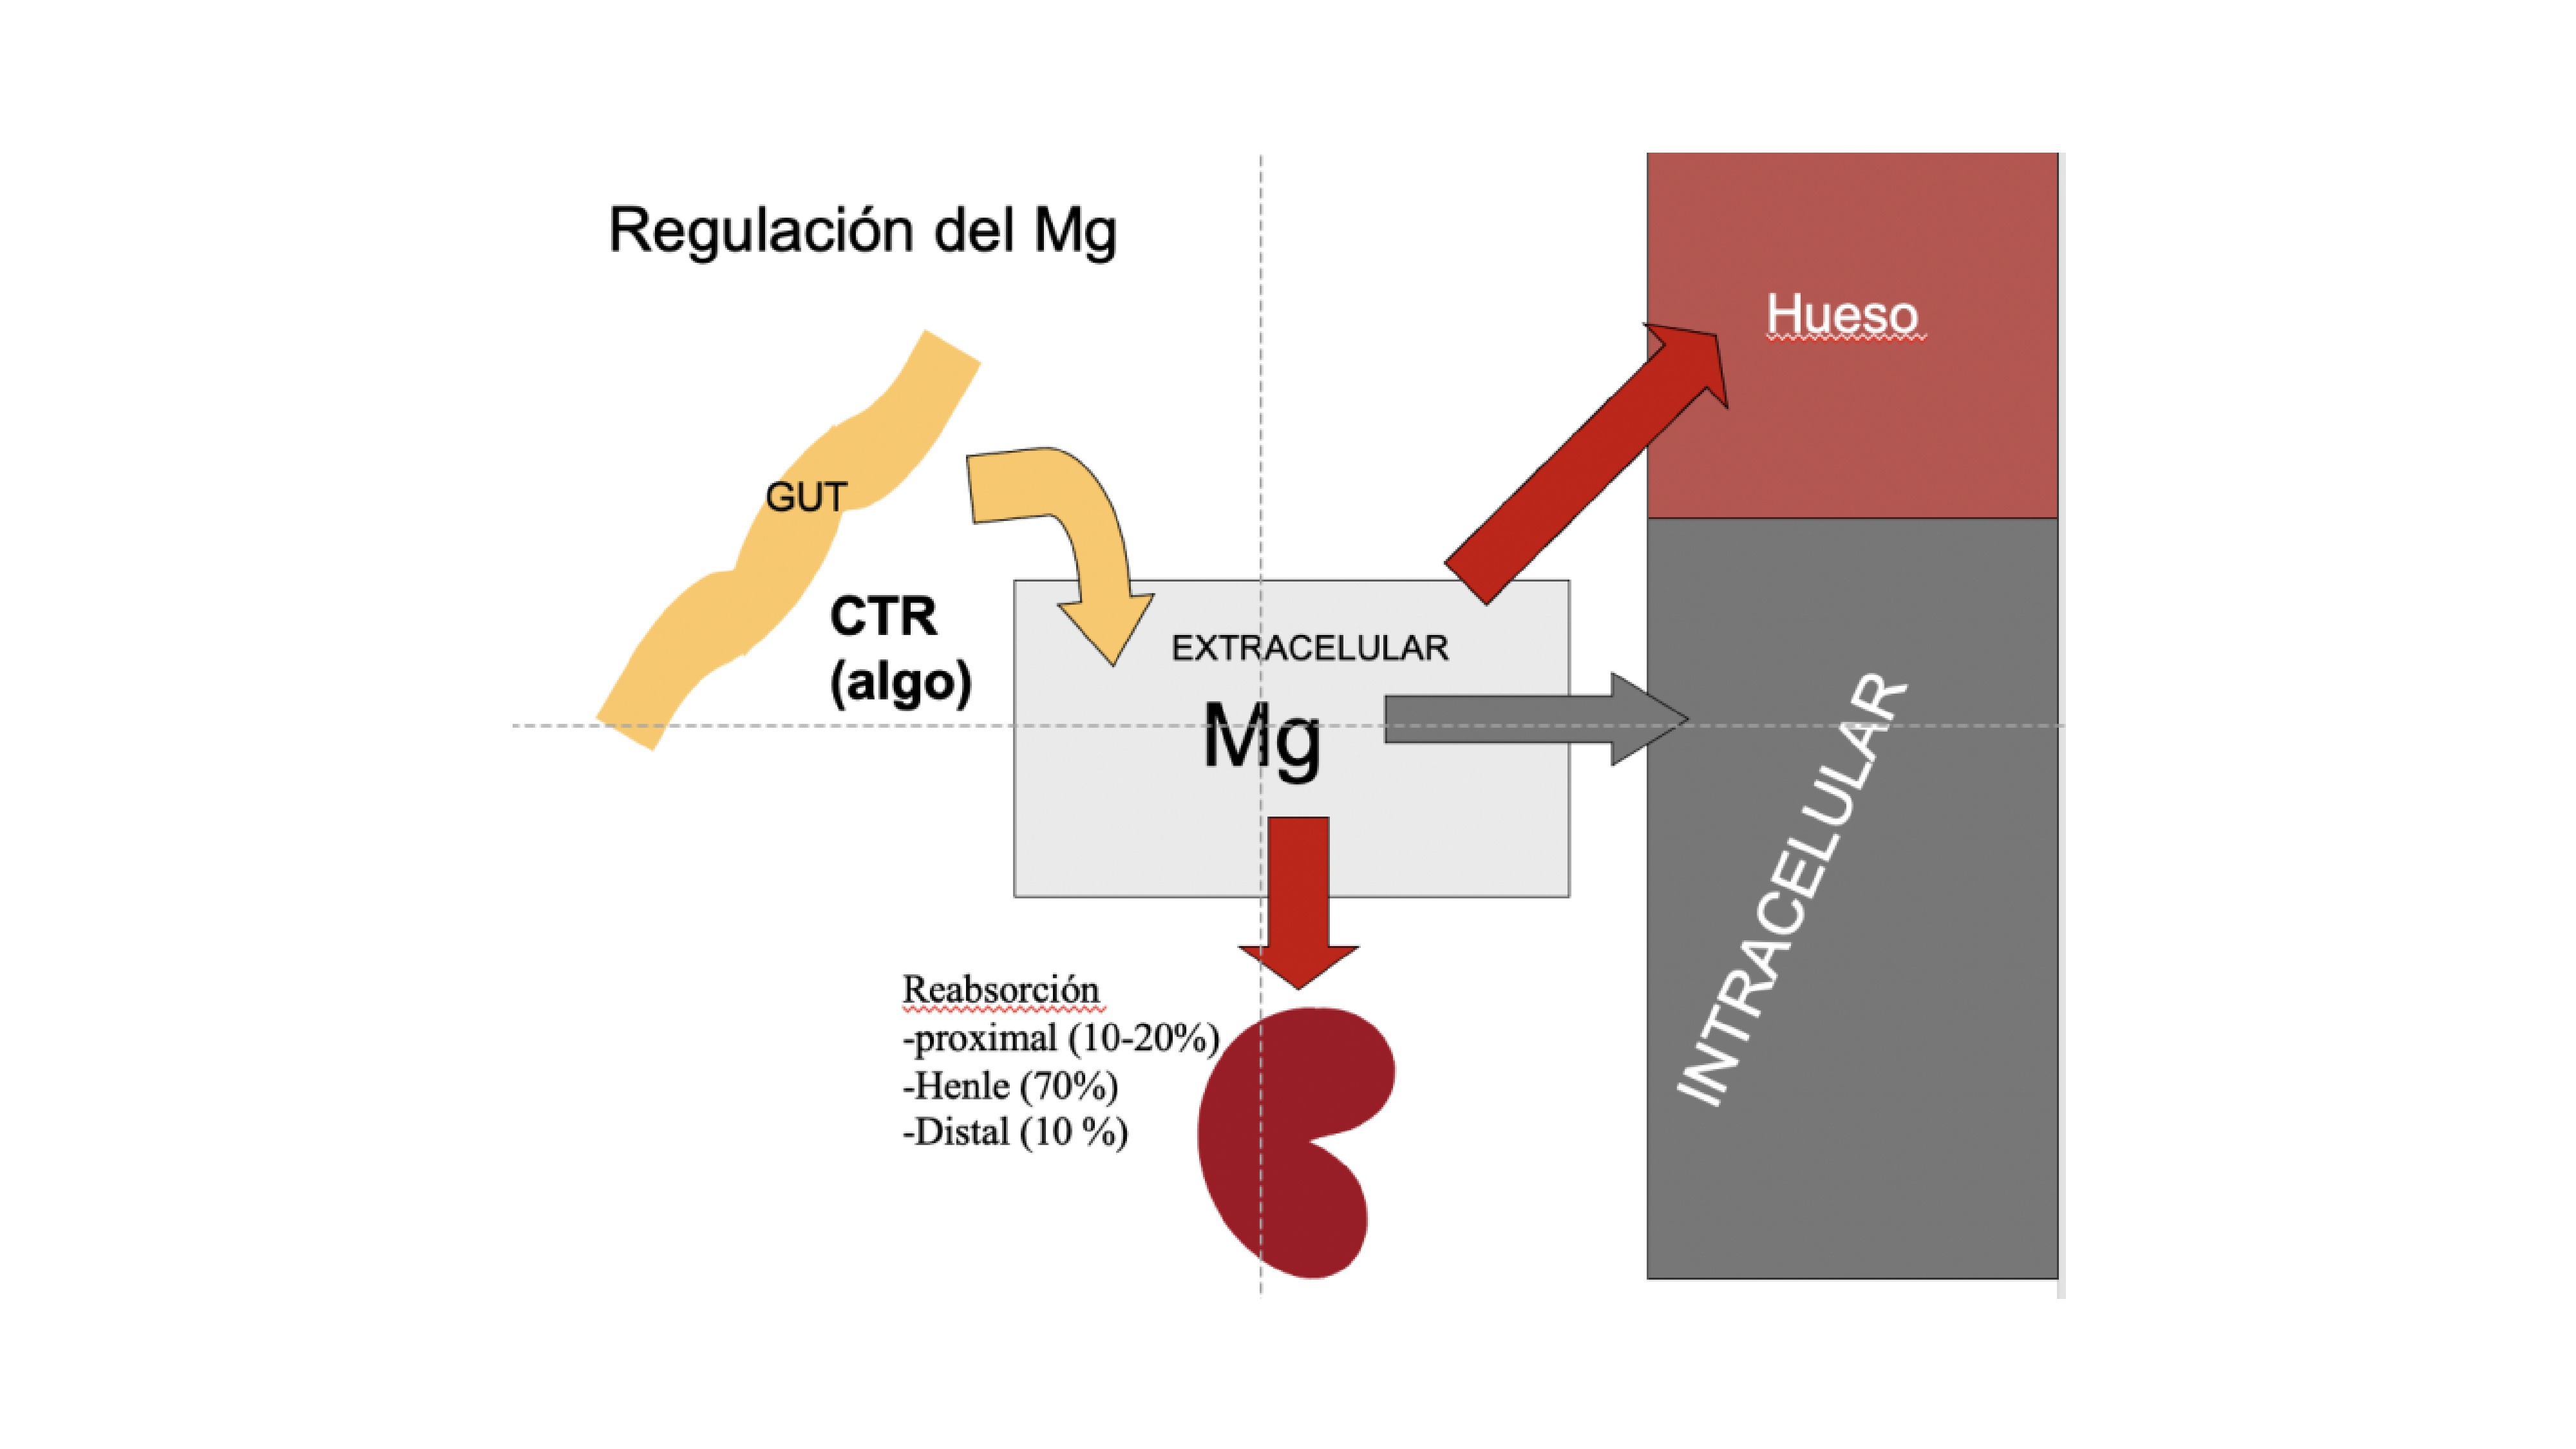 El balance de magnesio está determinado por la ingesta y absorción, movimiento de Mg entre hueso, espacio intracelular y el espacio extracelular y la excreción renal de Mg La mayor parte del magnesio ingerido se absorbe en el intestino delgado. a través de una vía paracelular de forma pasiva. Activo, La absorción transcelular activa de Mg ocurre en el colon a través de el canal de magnesio TRPM6. La absorción paracelular aumenta con 1,25D, posiblemente mediante la regulación de las claudinas 2 y 12 . En el riñon se filtran diariamente 2400 mg de magnesio y se reabsorbe el 90-95%. En el túbulo proximal se reabsorbe el 10-25% de Mg , mucho menos que lo que se reabsorbe de Ca (60 a 70%). Esta diferencia puede ser debida al gran radio del magnesio hidratado. En el la rama ascendente del as de Henle se reabsorbe un 70% del magnesio, por via paracelular (claudinas 16 y 19 ) impulsado por gradiente transepitelial. Activación de CaSR por hipercalcemia y quizás hipermagnesemia modifica el gradiente transepitelial e incrementa la excreción de calcio y magnesio (2). Diez porciento de la reabsorción de magnesio se produce a través de un activo proceso transcelular en el DCT a través del apical canal epitelial, TRPM6. El factor de crecimientoEpidérmico regula la actividad de TRPM6, mientras que La expresión de TRPM6 es modificada por estrógenos y la concentración de Mg. La expansión de volumen, los diuréticos de asa y tiazidas, la diuresis salina y de agua y la aldosterona disminuyen la reabsorción tubular de Mg.Muchas preguntas siguen sin respuesta con respecto a magnesio en ERC. Los niveles bajos de 1,25D pueden disminuir la absorción intestinal de magnesio en pacientes con ERC. Los niveles de Mg no esta aumentados en la ERCLa concentración sérica de magnesio no refleja muy bien el nivel de magnesio corporal total. Sólo el 1% del magnesio corporal total está presente en liquido extracelular y solo el 0.3% del magnesio corporal total es se encuentra en el suero, por lo que las concentraciones de magnesio en suero no son buenos predictores del magnesio corporal total. Se puede realizar la prueba de retención de magnesio: ¿test de de carga de Mg